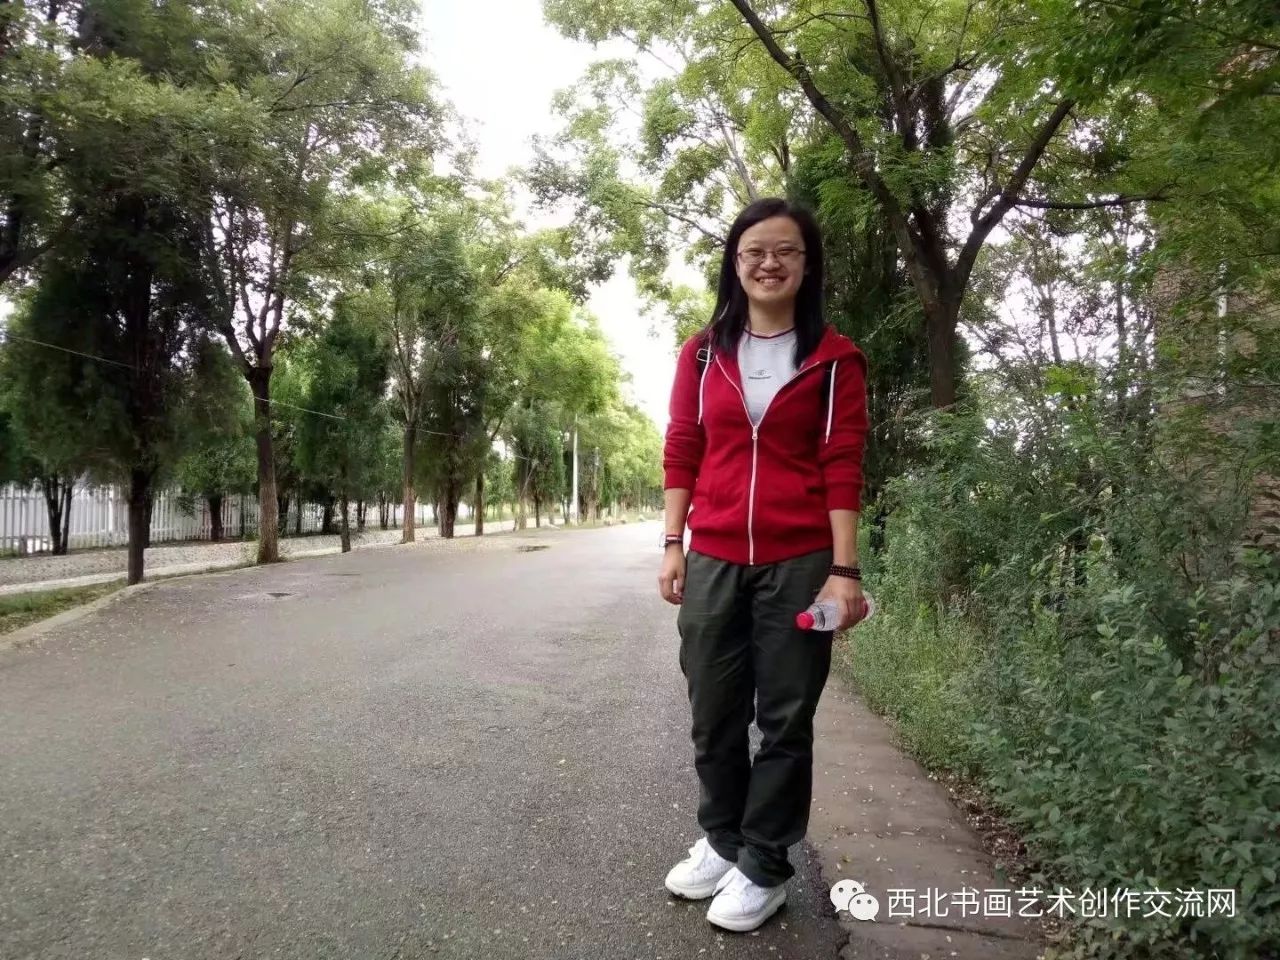 杨 琦,90后,甘肃陇西人2015年毕业于陇西一中,现就读于天津师范大学